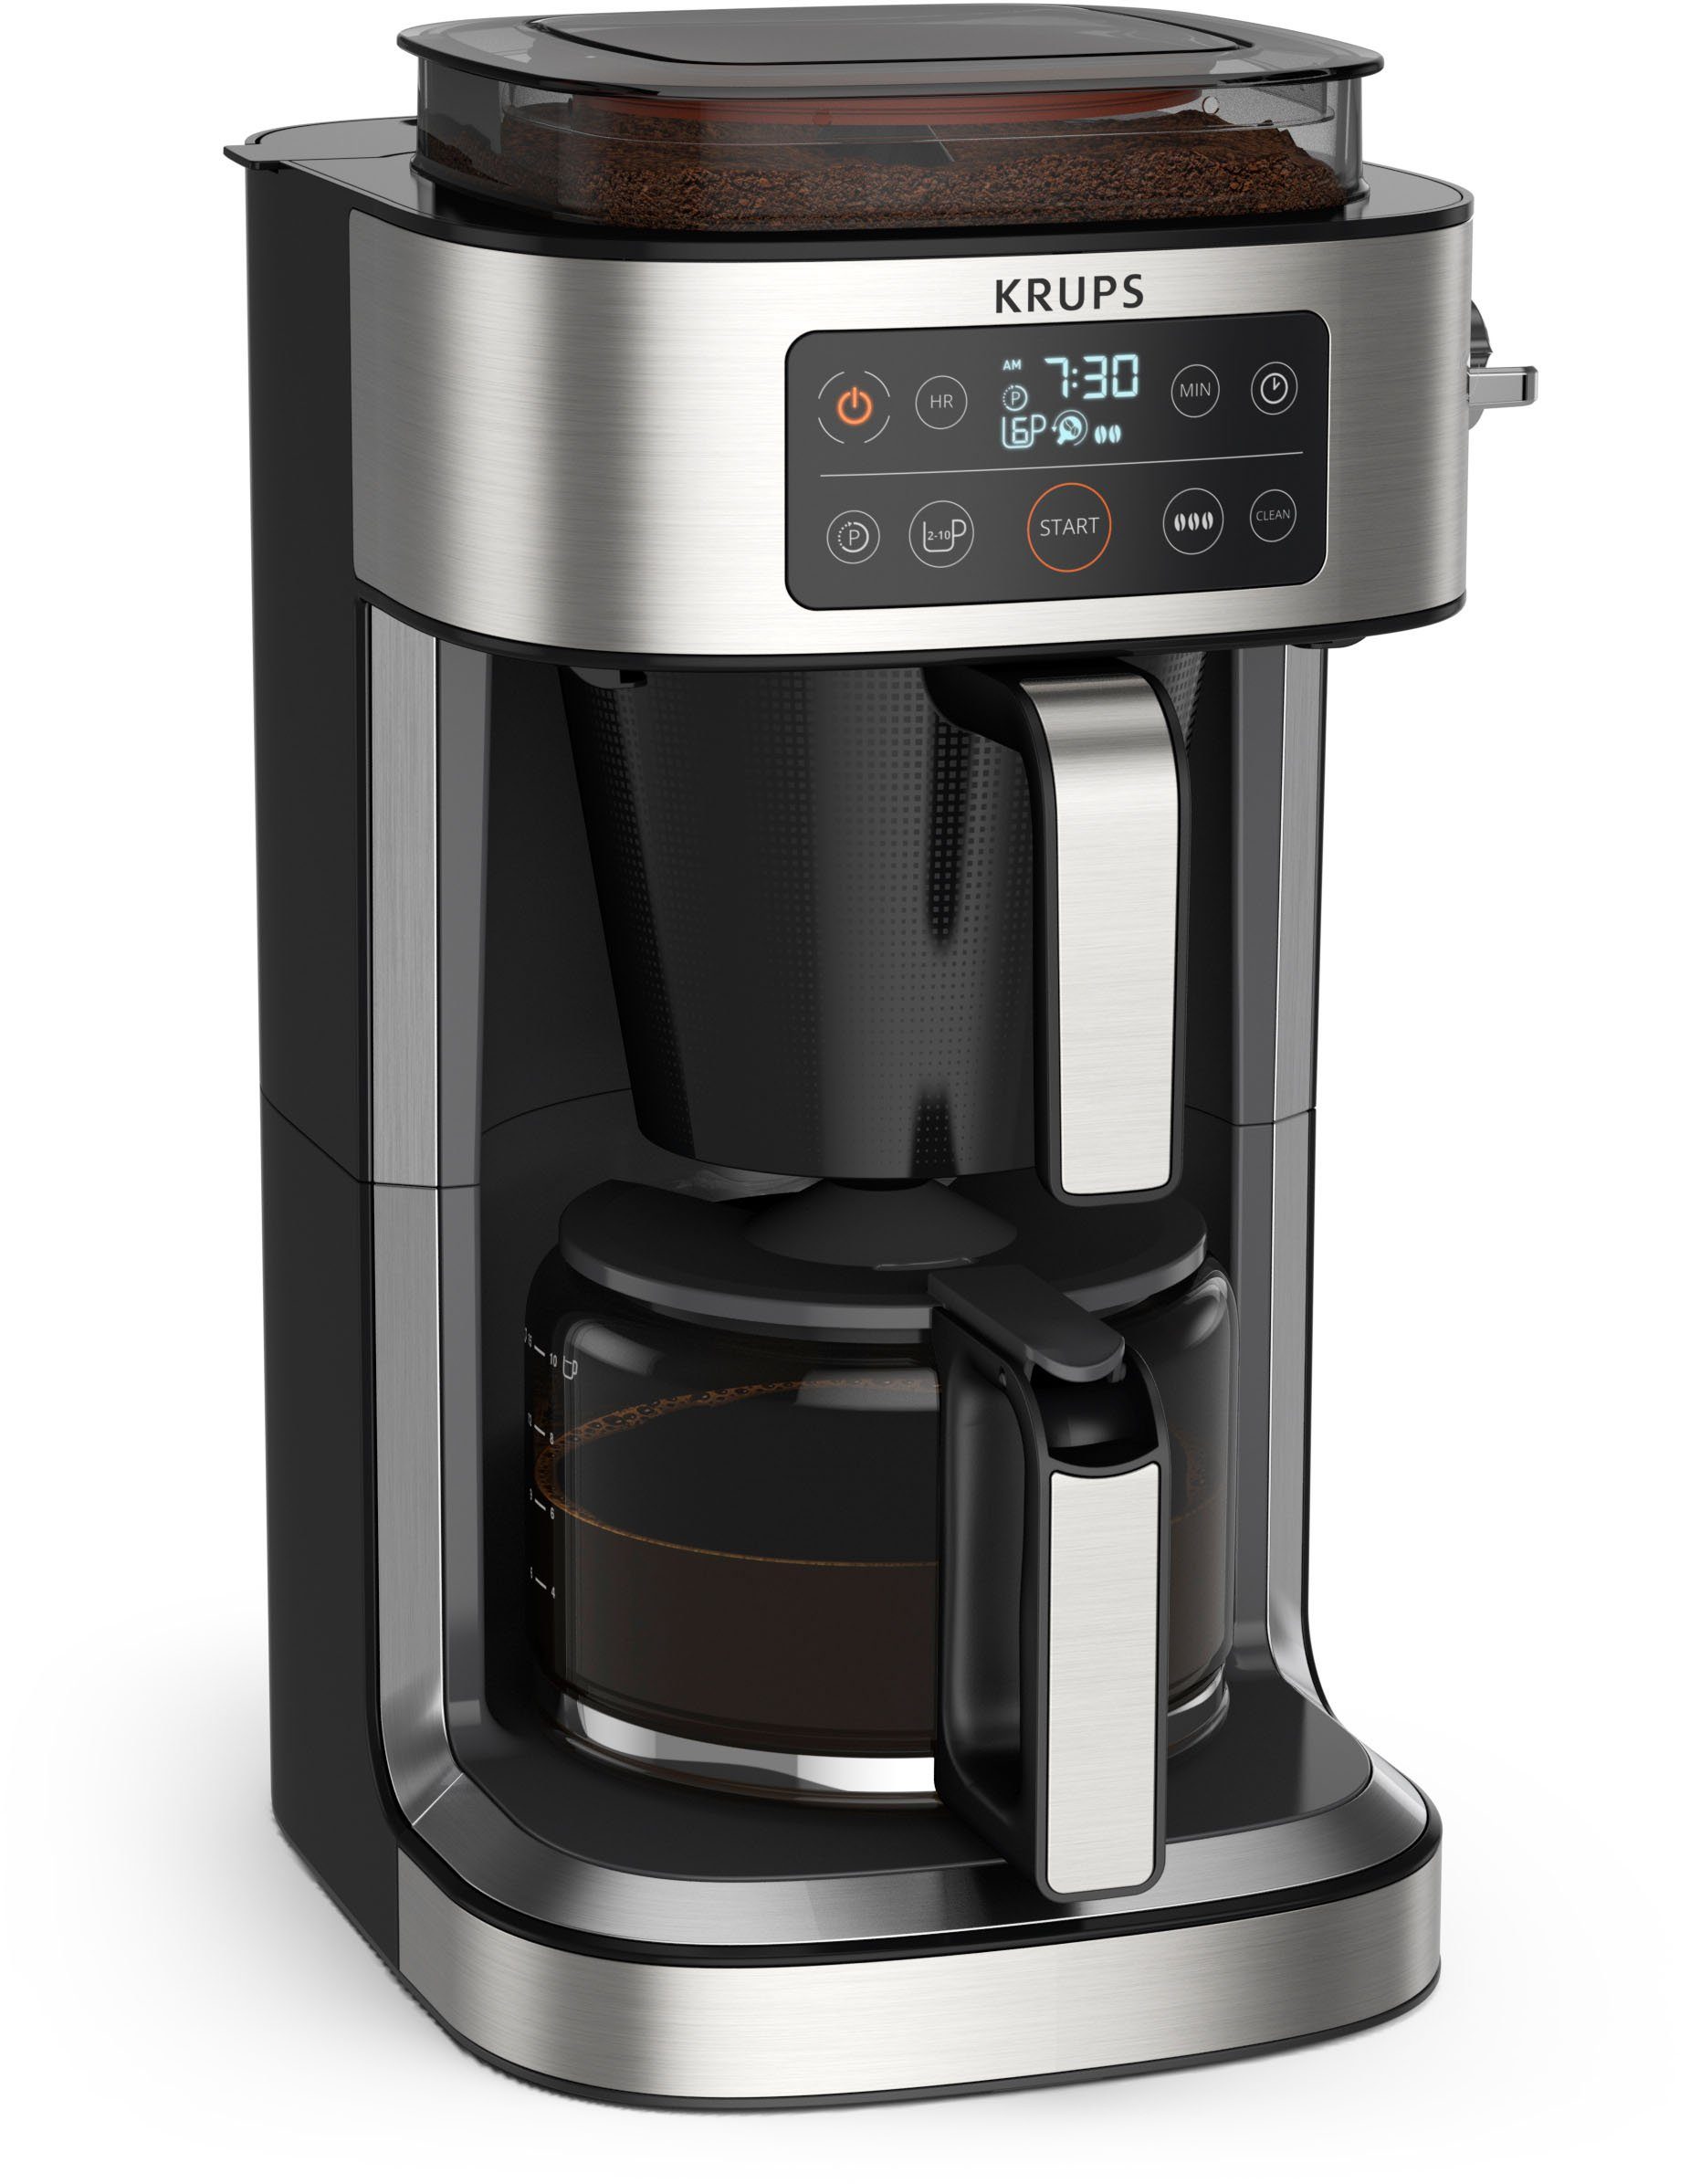 400 bis Krups frischen integrierte zu Kaffeekanne, Aroma g für Kaffee-Vorratsbox KM760D Partner, 1,25l Kaffee Filterkaffeemaschine